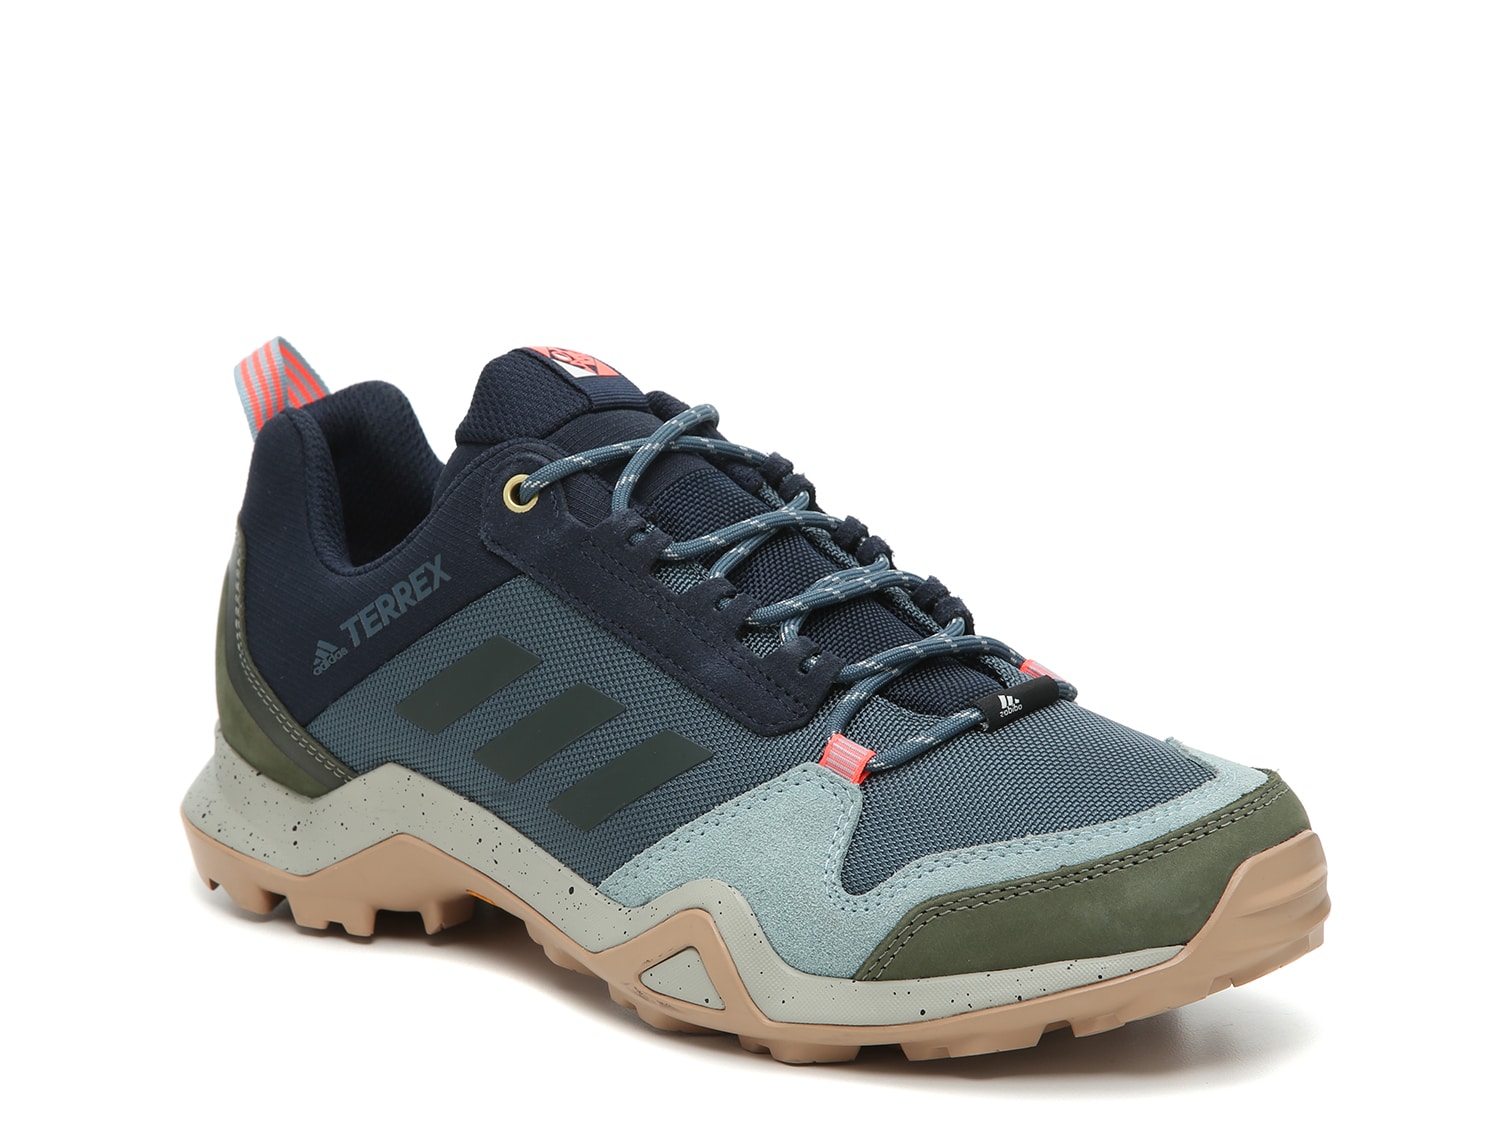 adidas terrex ax3 trail shoe